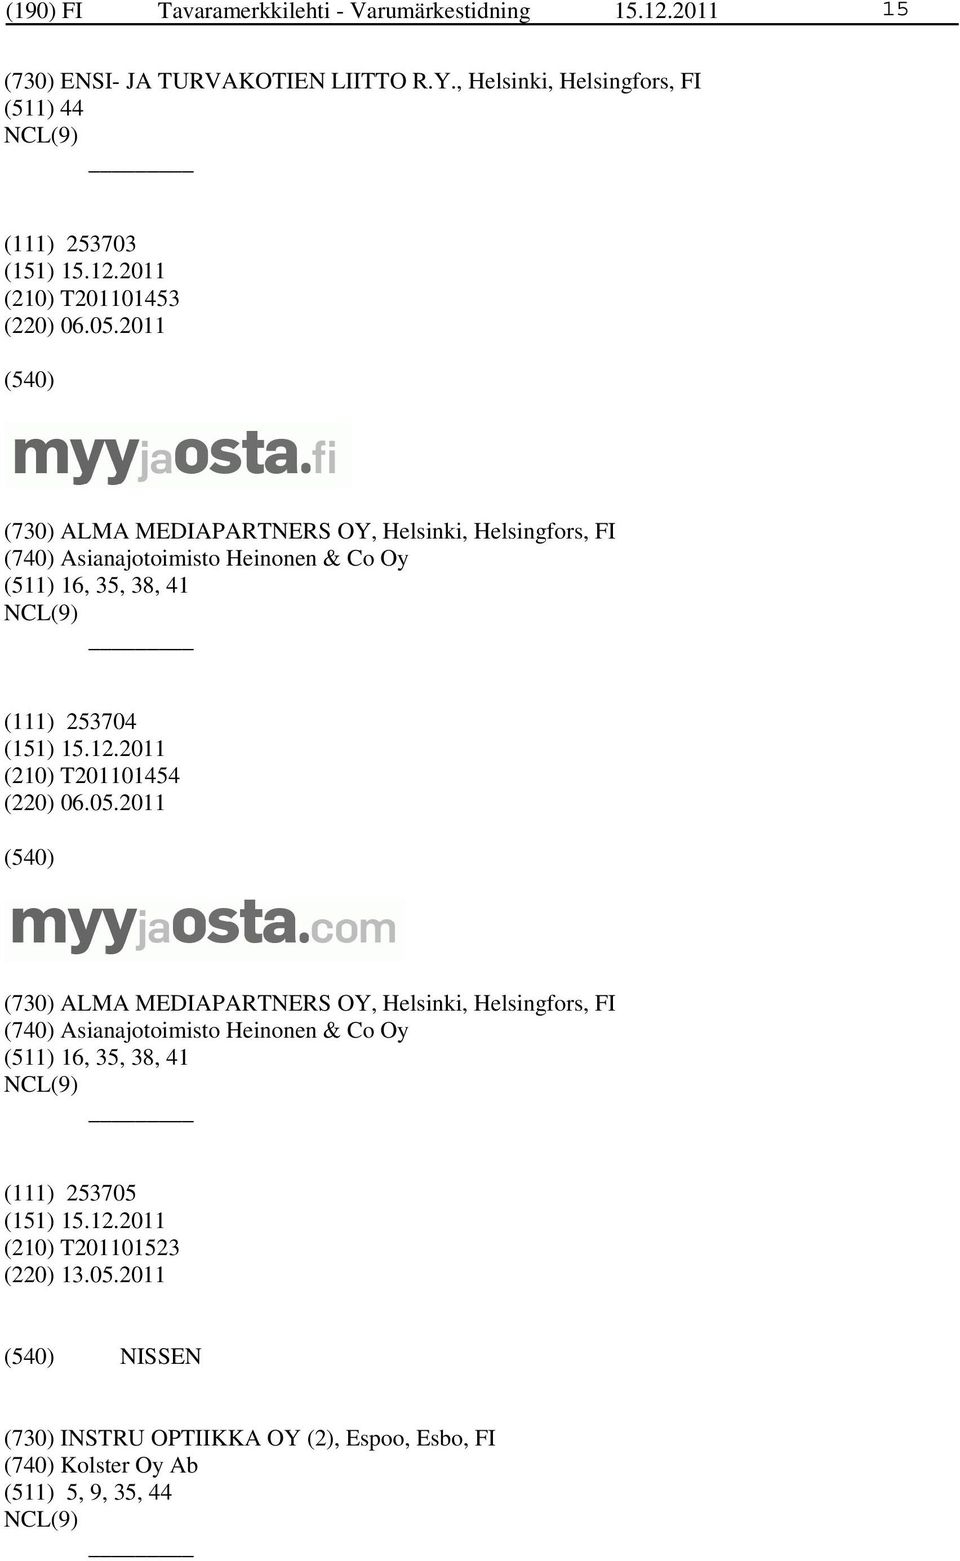 2011 (730) ALMA MEDIAPARTNERS OY, Helsinki, Helsingfors, FI (740) Asianajotoimisto Heinonen & Co Oy (511) 16, 35, 38, 41 (111) 253704 (210)